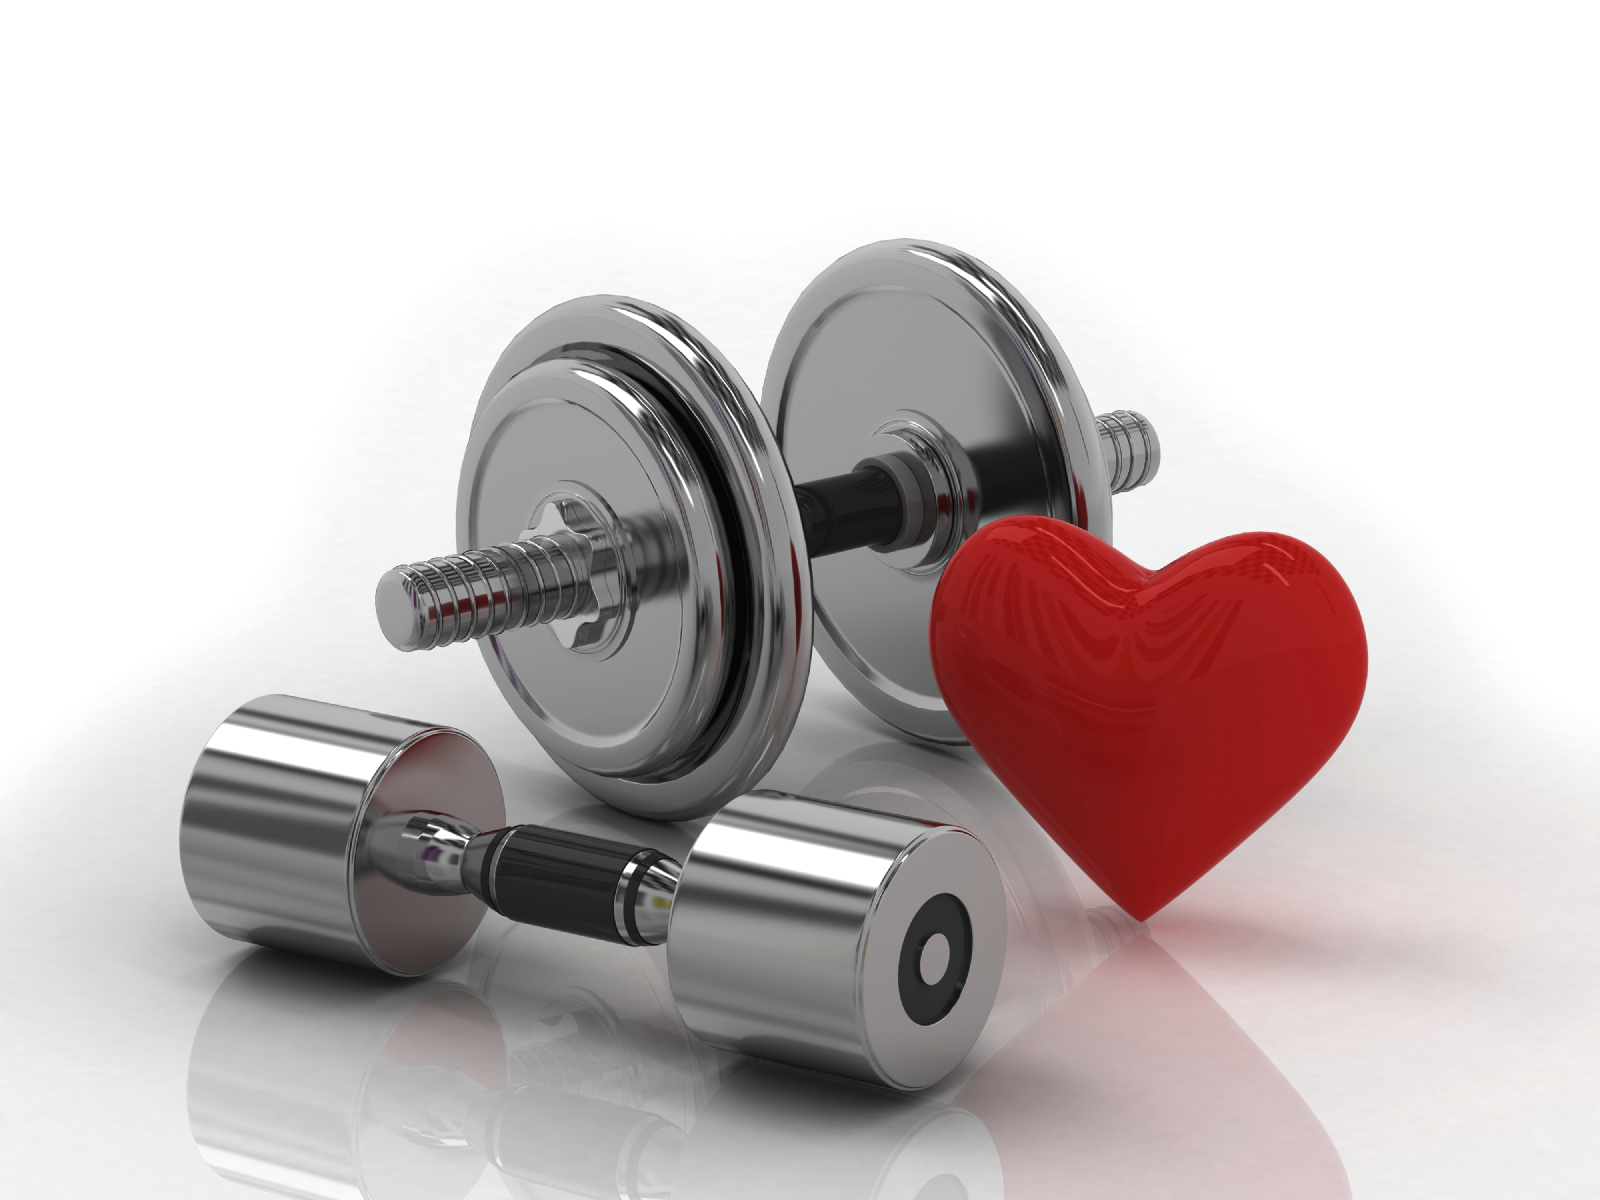 La pratique de l’exercice pour les personnes souffrant de maladies cardiaques : l'éducation sanitaire peut-elle aider à changer les comportements ?